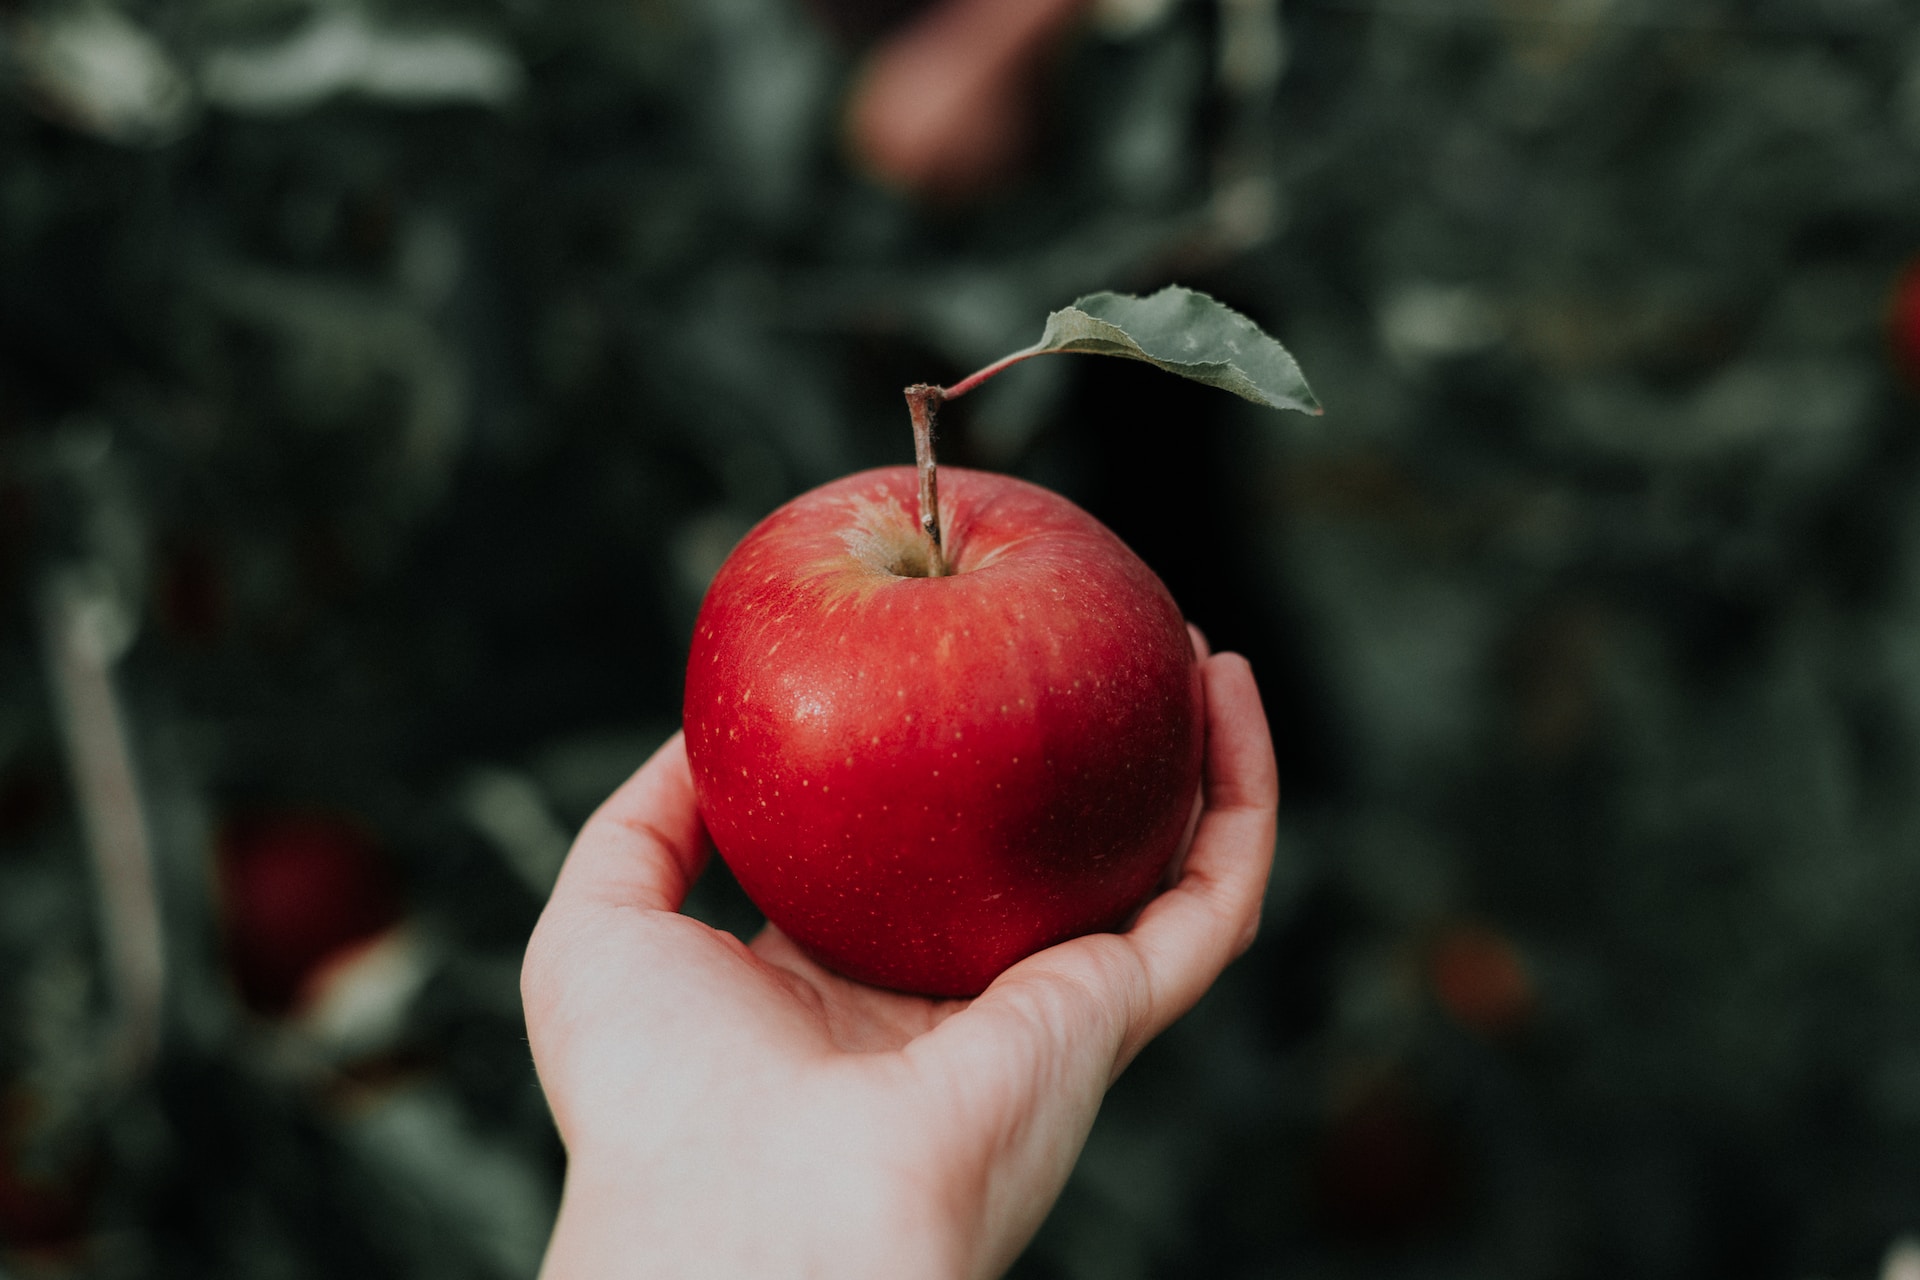 Війна за яблука. Apple судиться з фермерами за зображення фруктів – і незрозуміло, навіщо - Фото